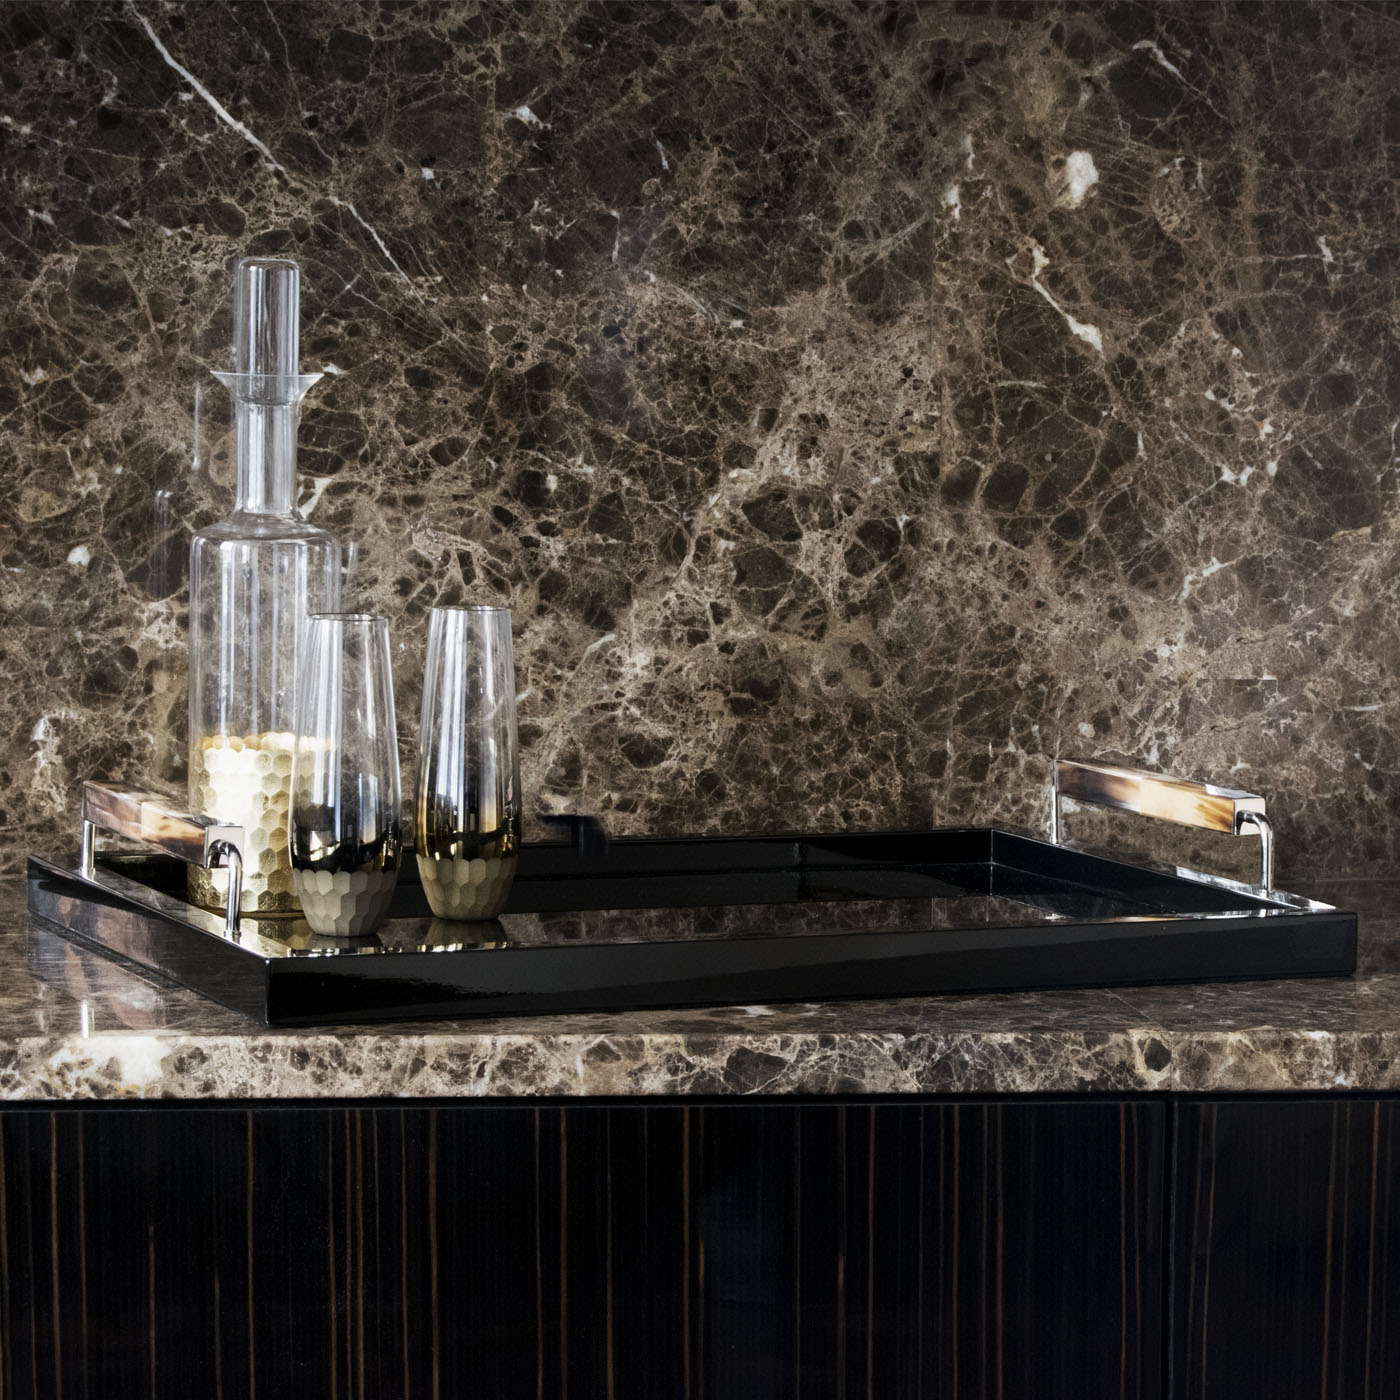 Accessori tavola - Isacco vassoio in legno laccato lucido colore nero - ambientata - Arcahorn